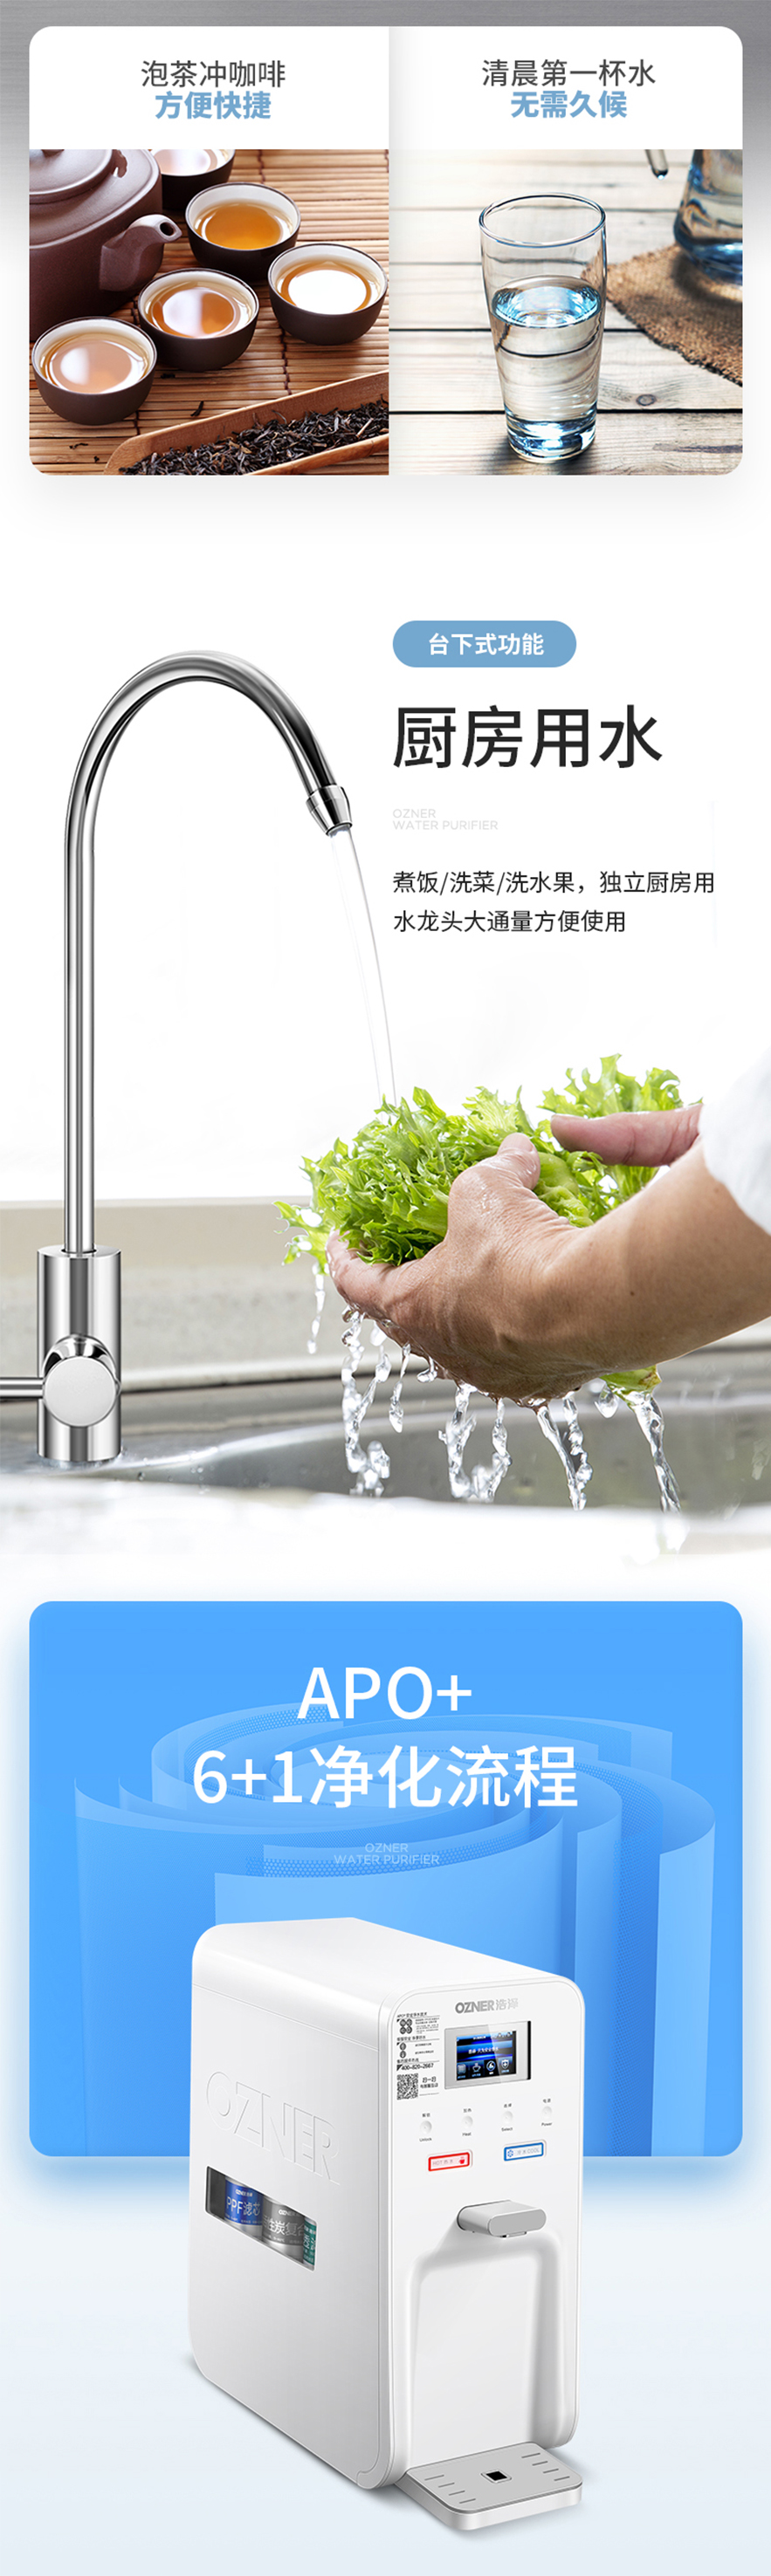 泸州净水器品牌